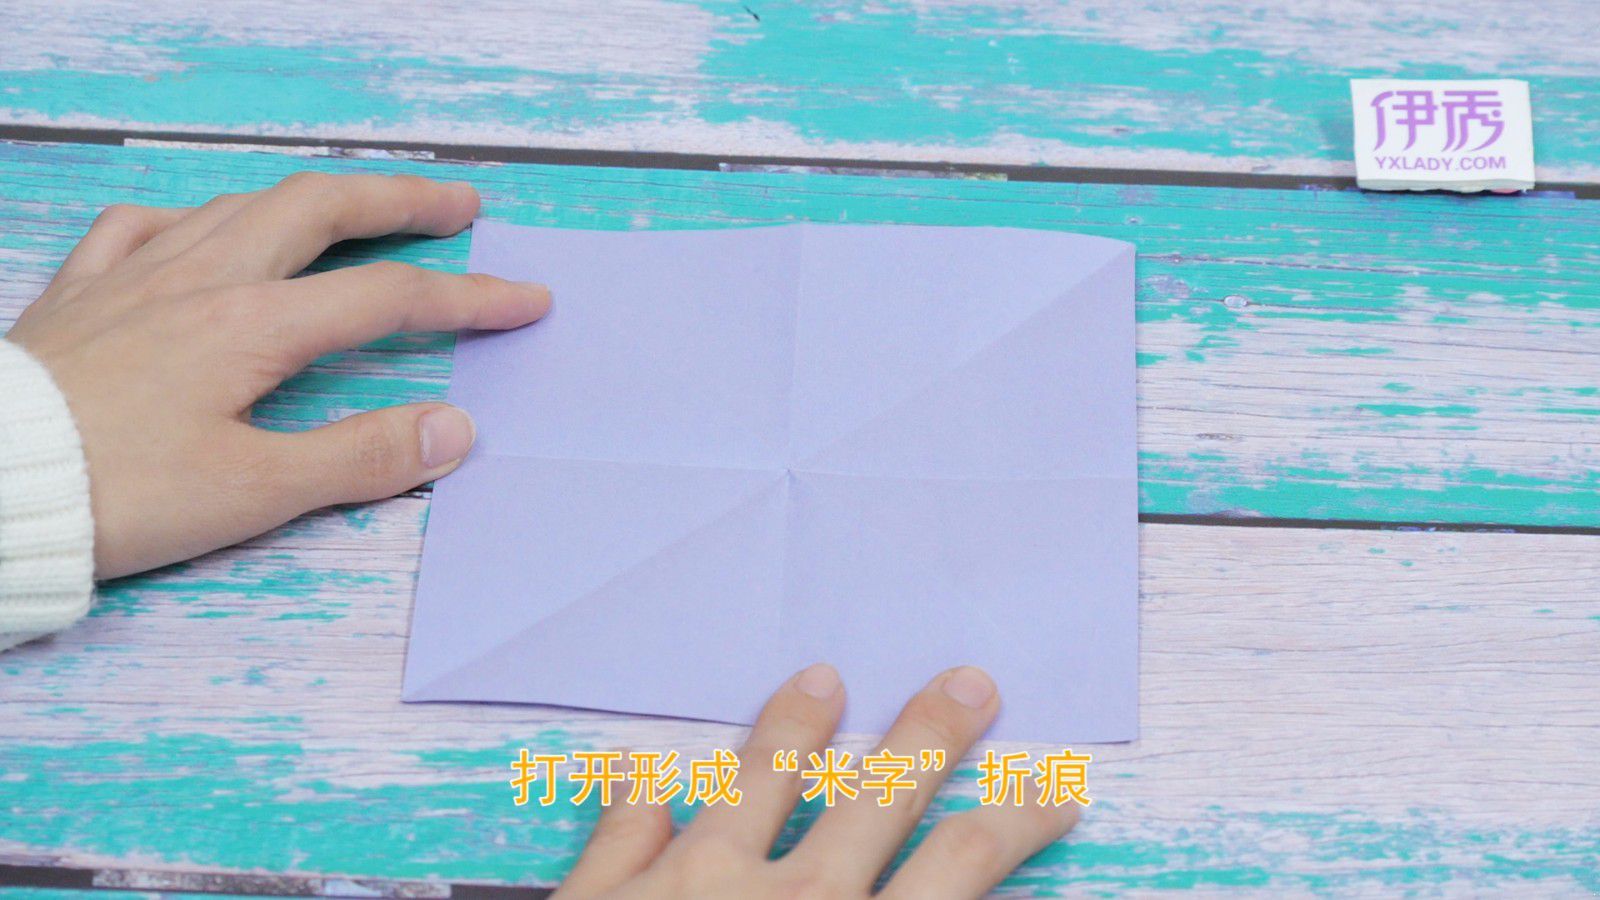 手工折纸DIY 起实用纸篮子折纸步骤图解💛巧艺网